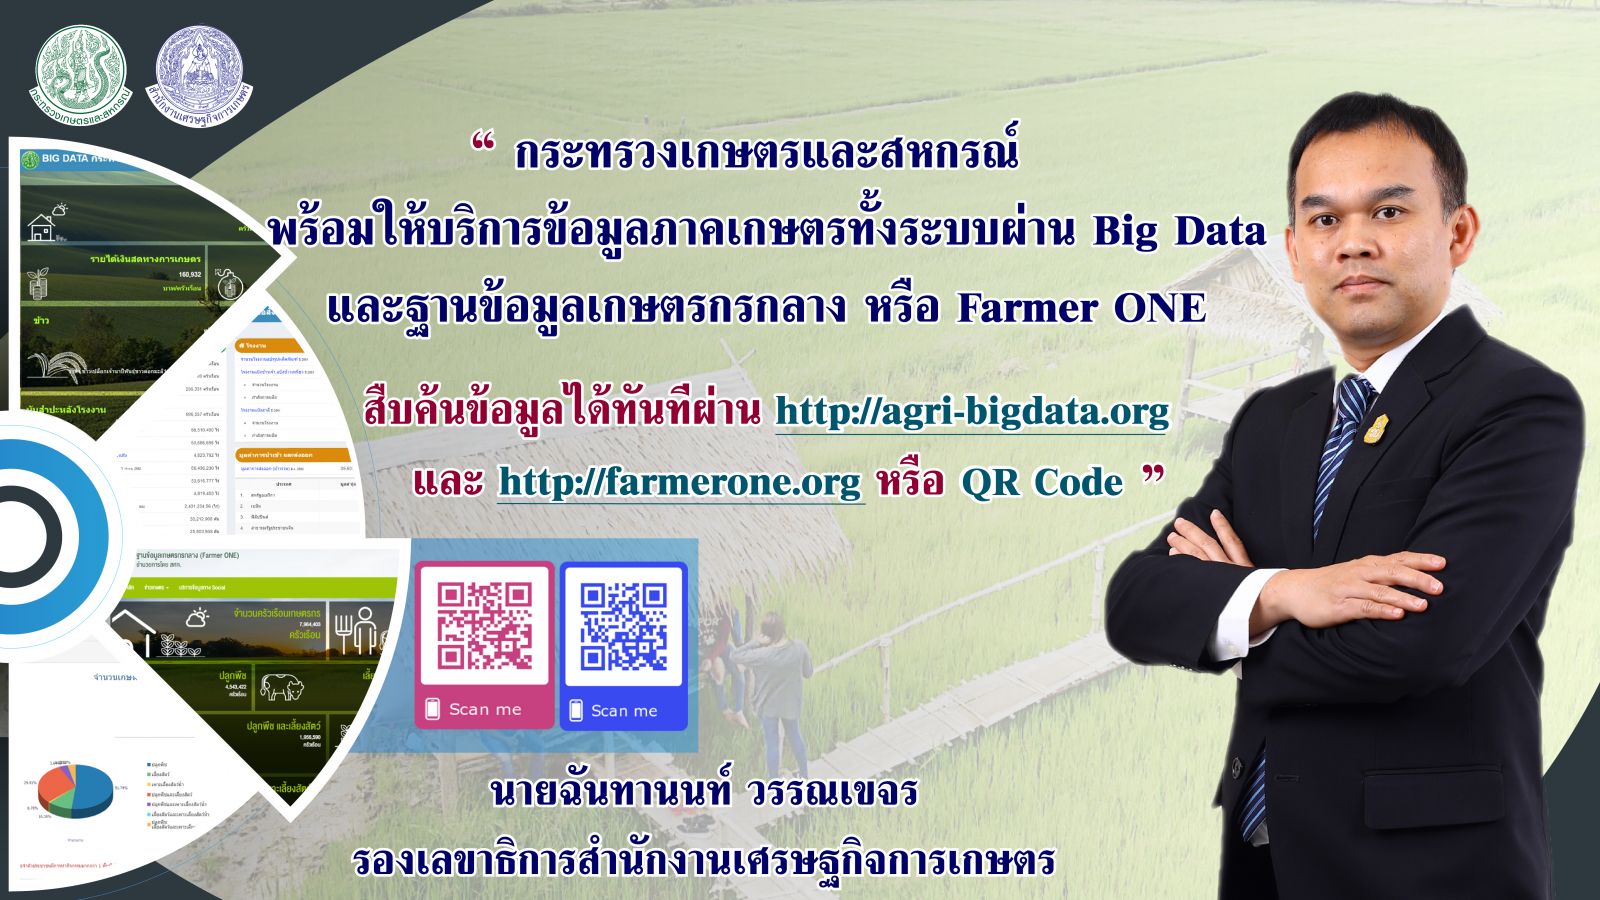 พร้อมแล้ว แหล่งข้อมูลเกษตร Big Data และ Farmer ONE สืบค้นผ่าน QR Code ได้เลย ​ 